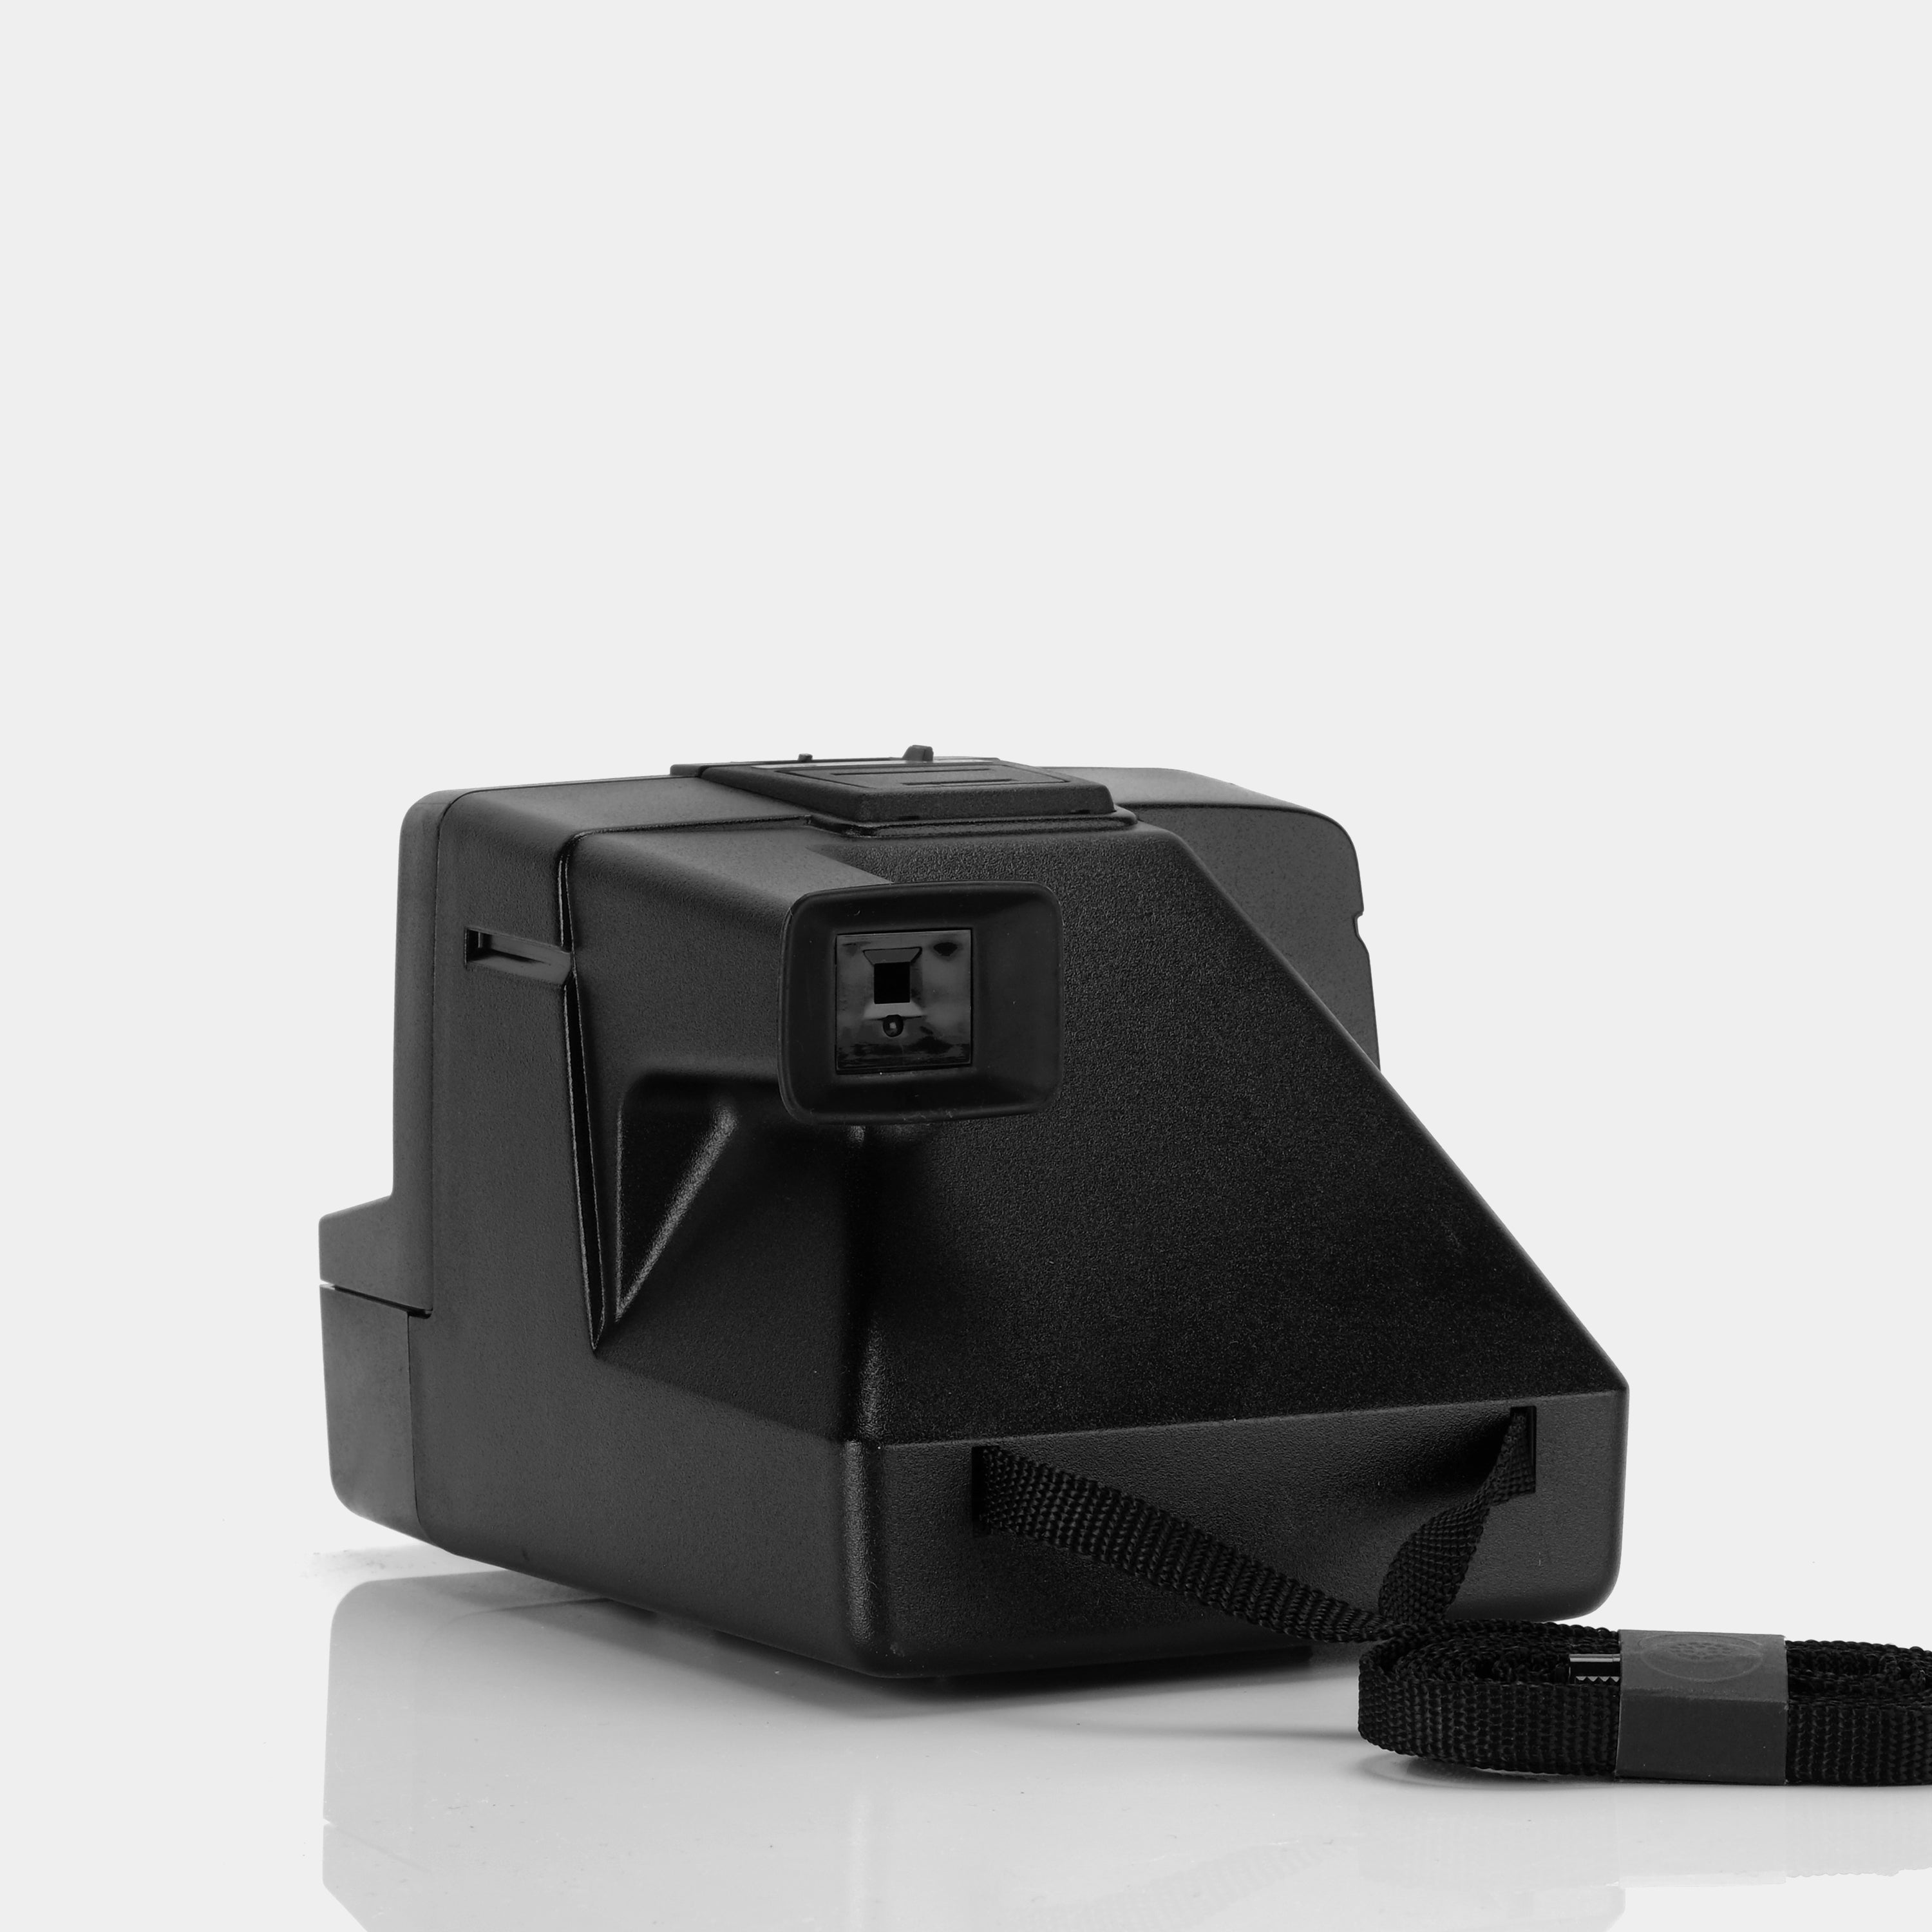 Polaroid SX-70 PolaSonic AutoFocus 5000 Instant Film Camera